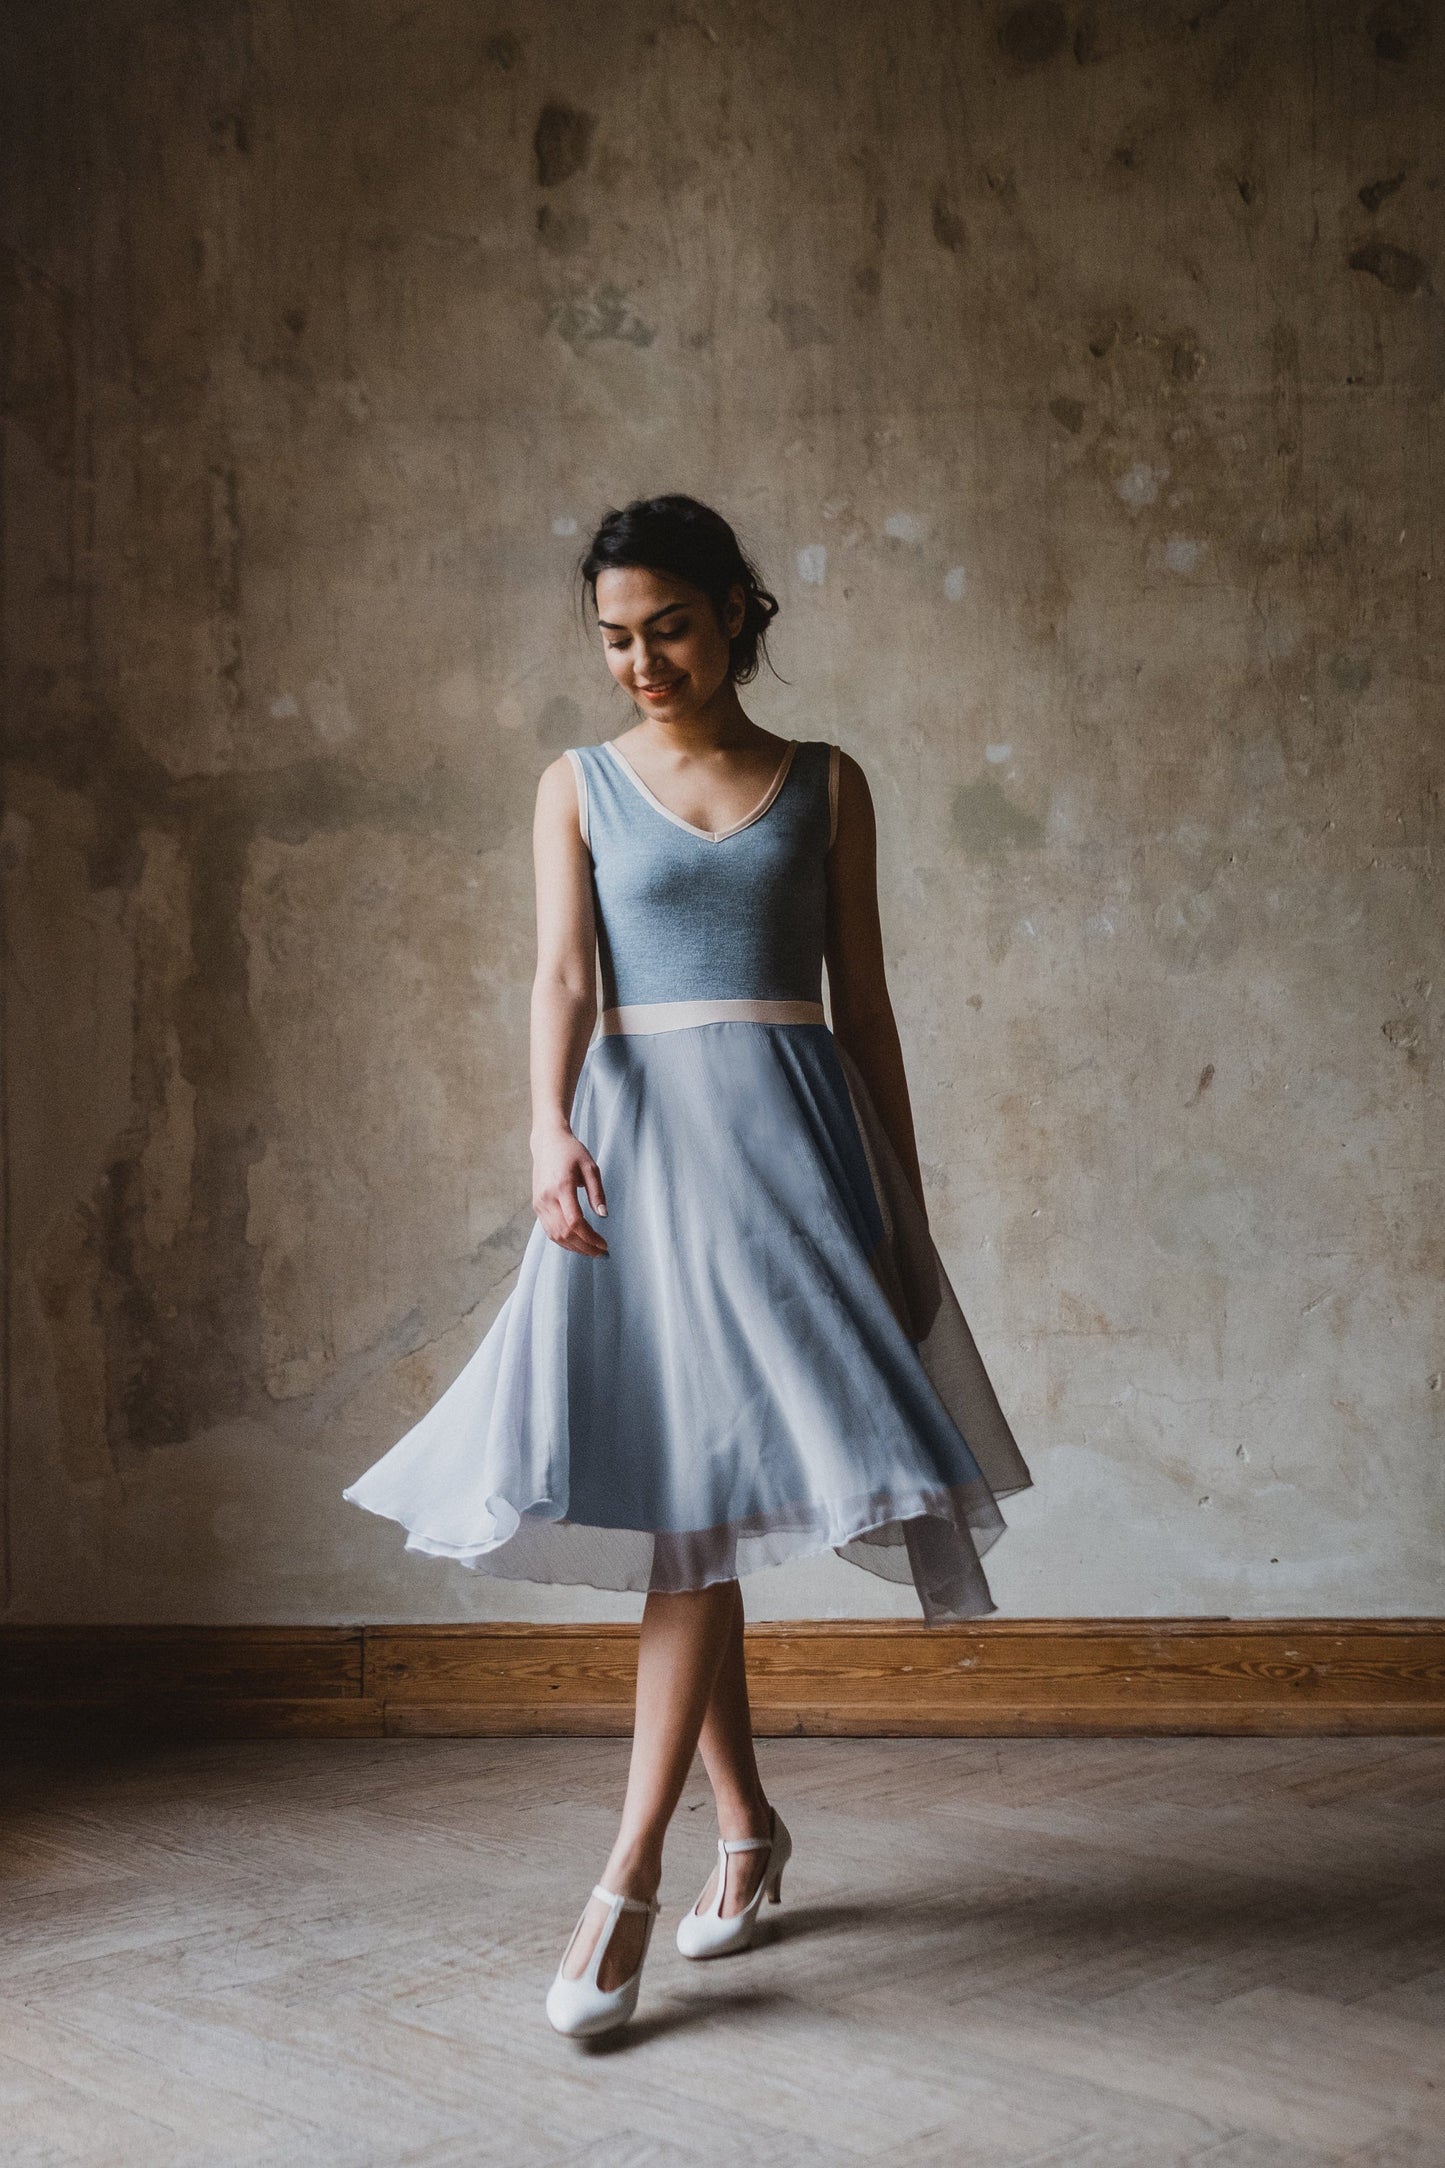 Wolkig leichtes Chiffon Kleid in pudrigem Graublau mit einem lässig, legerem Feinstrickoberteil